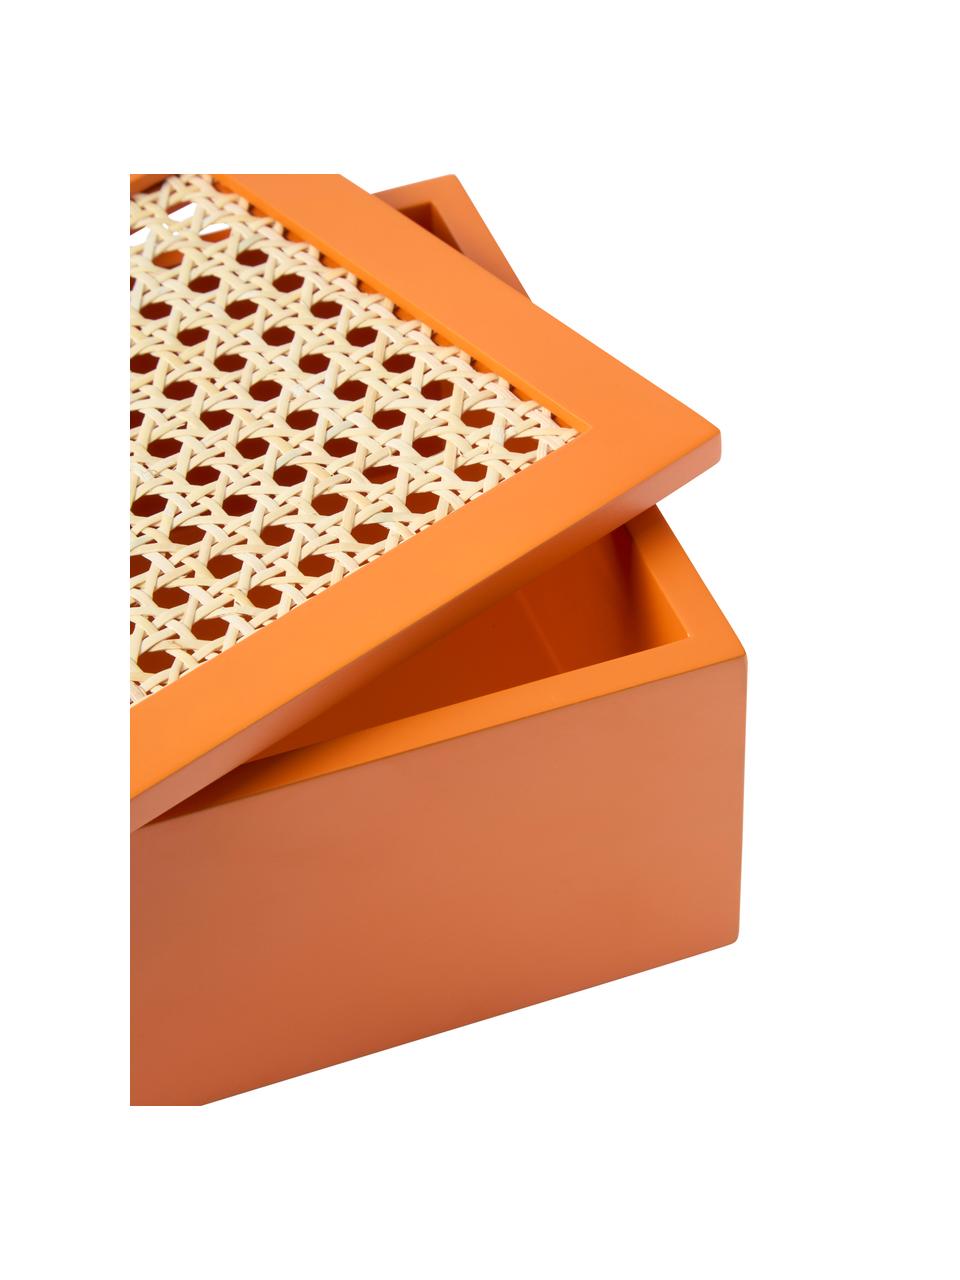 Boîte de rangement en cannage Carina, Orange, larg. 23 x haut. 10 cm